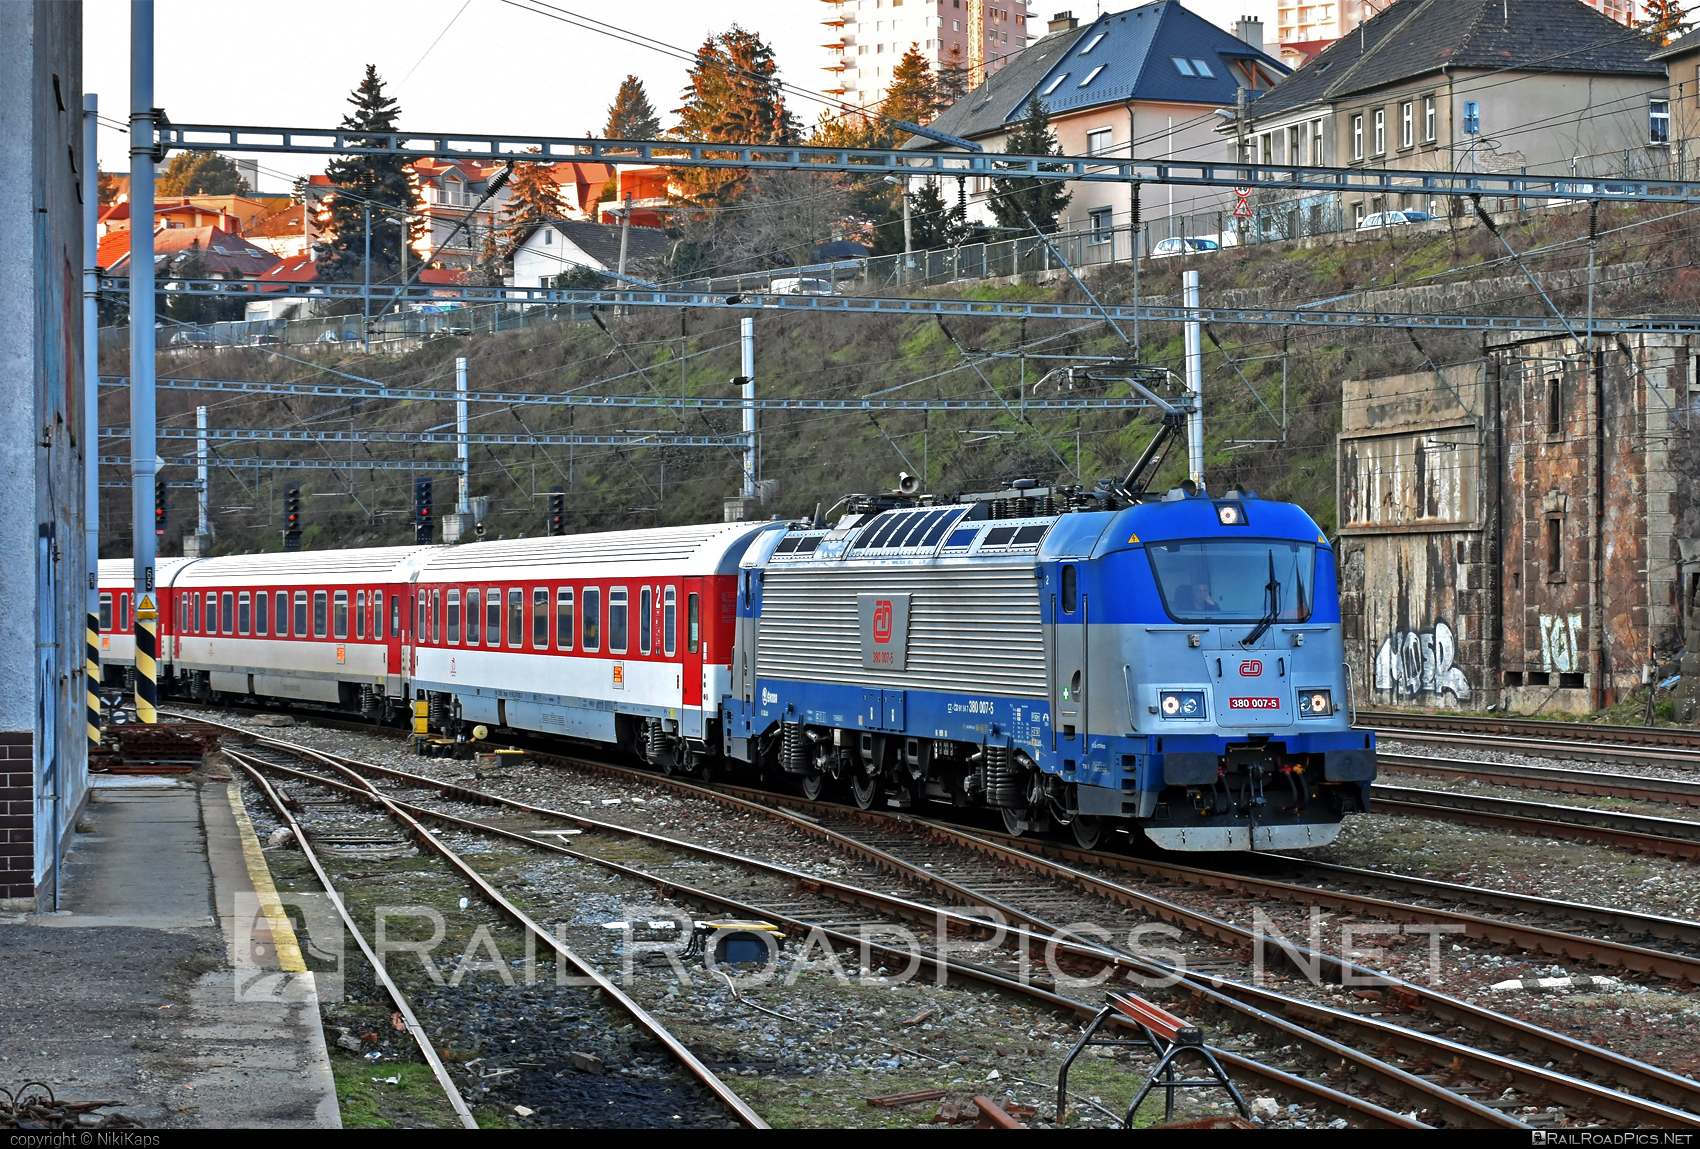 Škoda 109E1 Emil Zátopek - 380 007-5 operated by České dráhy, a.s. #cd #ceskeDrahy #emilzatopeklocomotive #locomotive380 #metropolitan #skoda #skoda109e #skoda109elocomotive